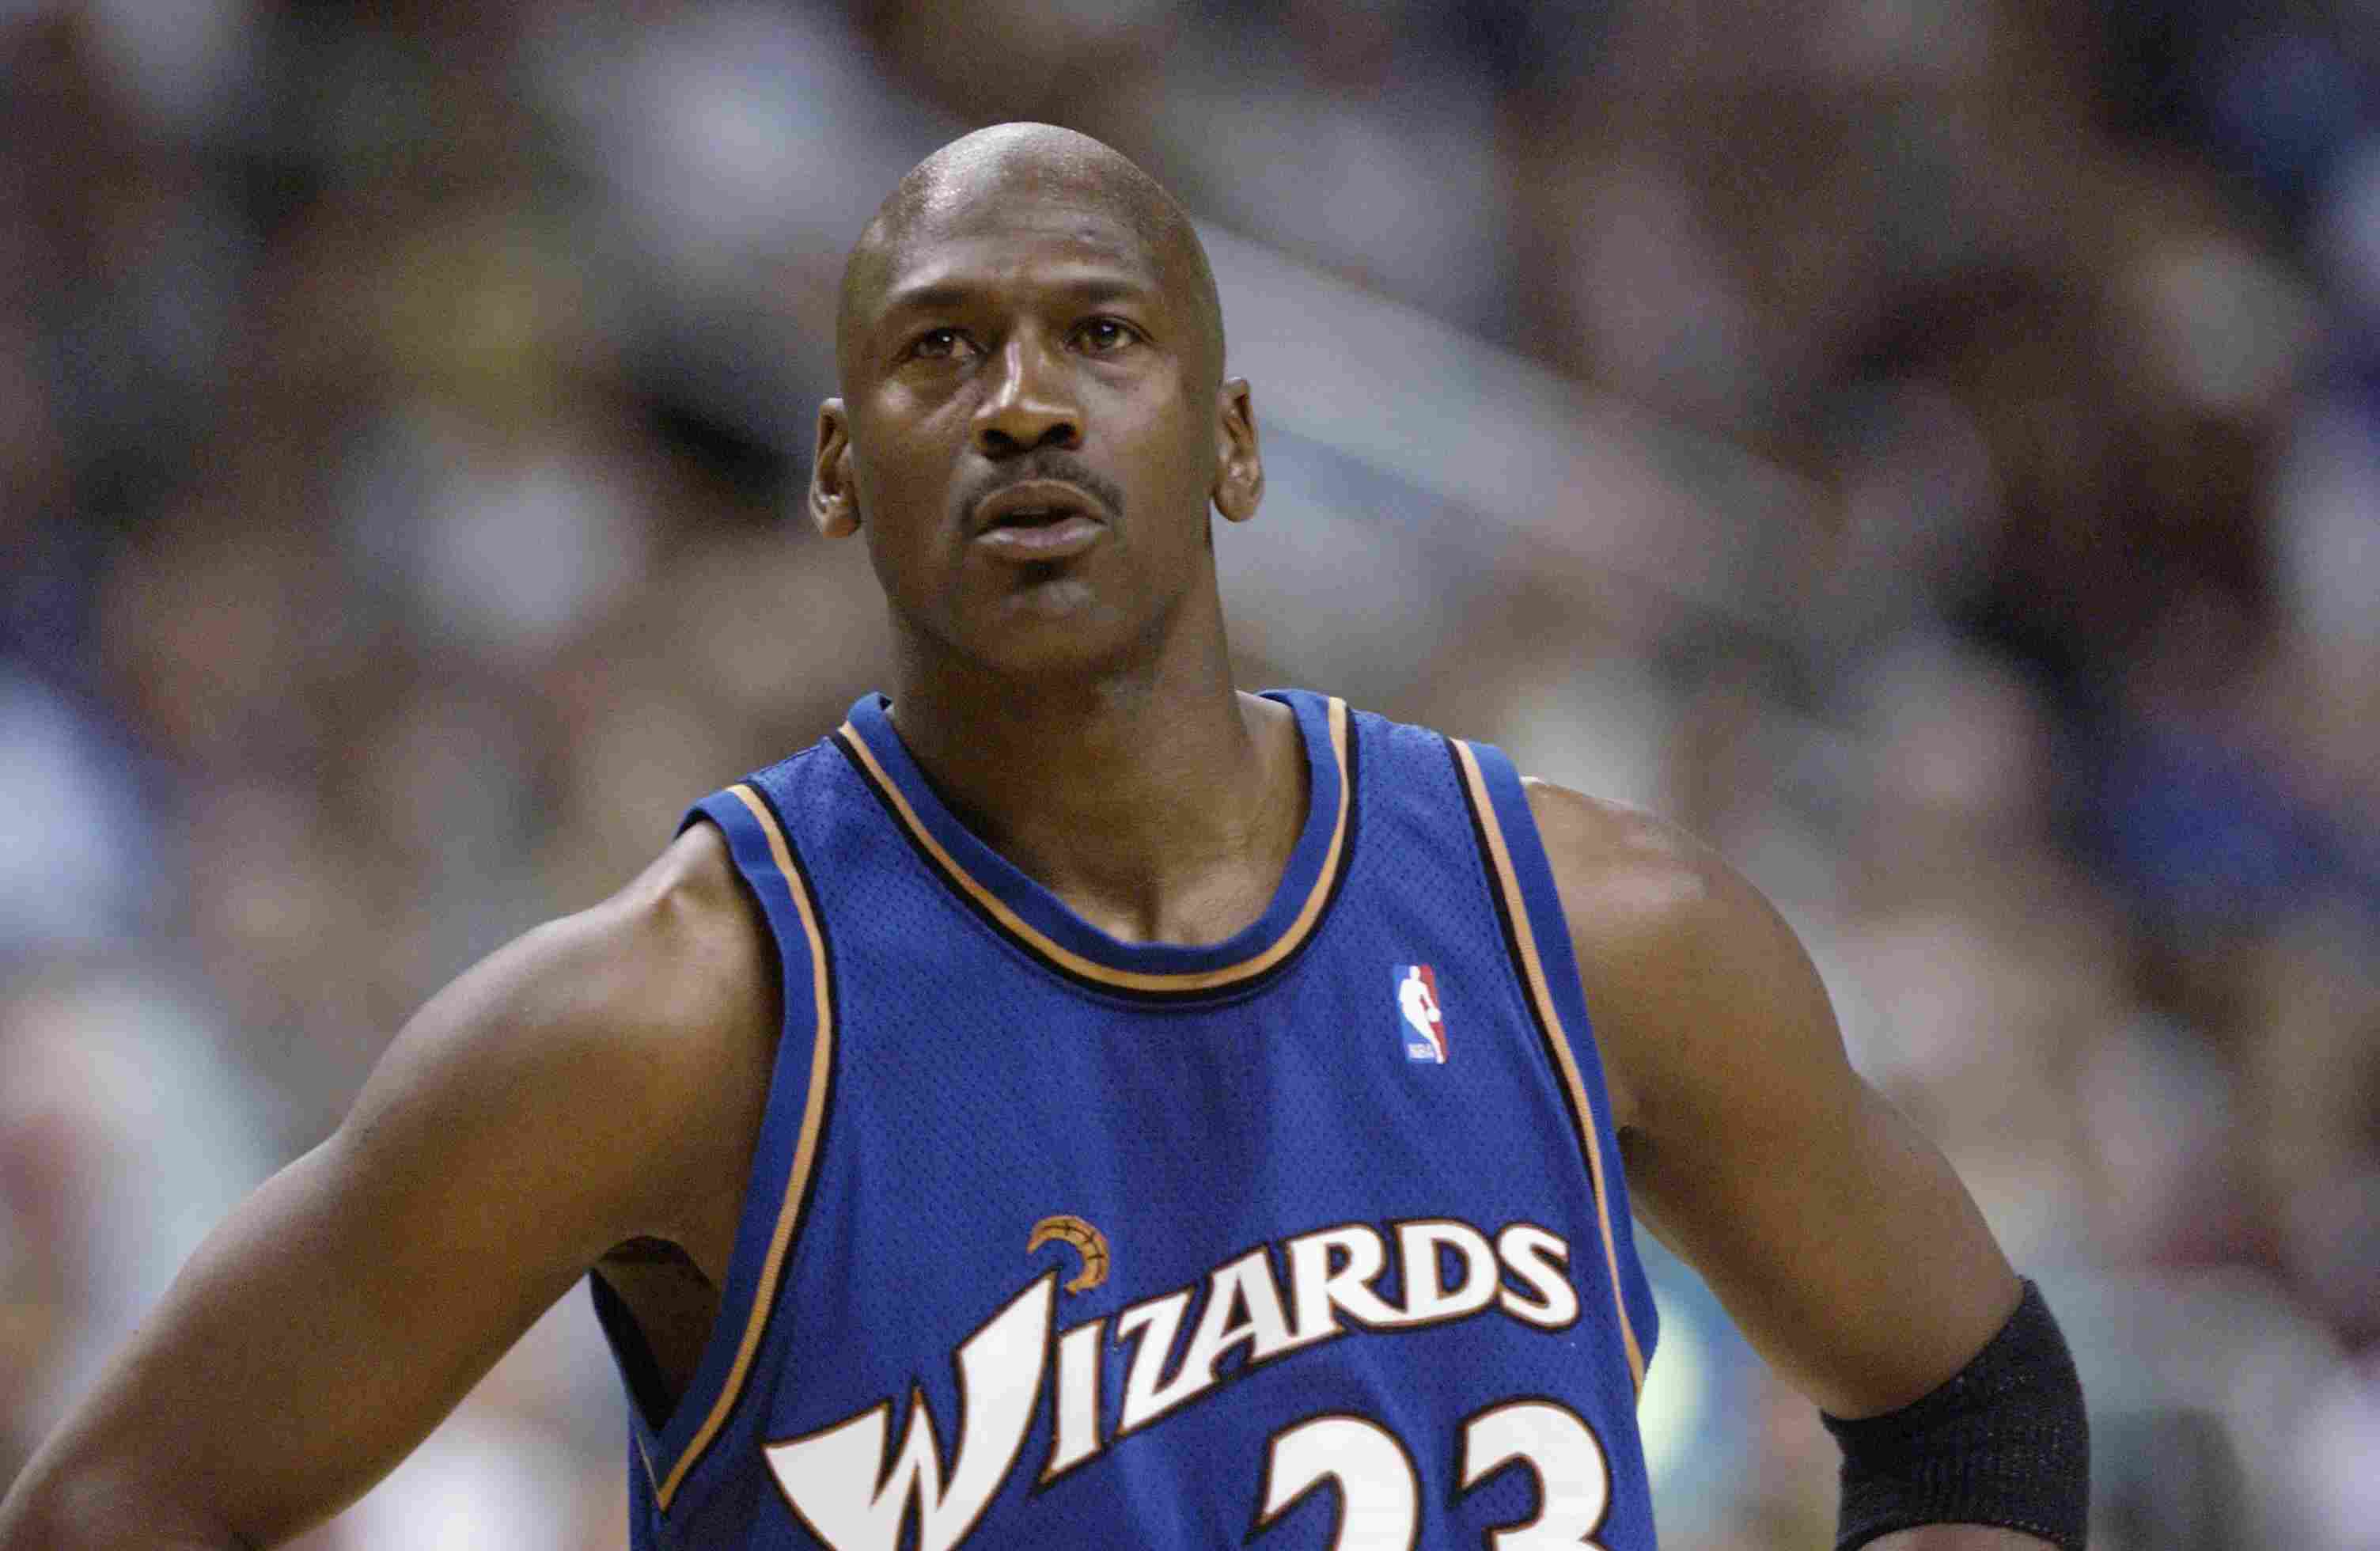 Em 1999, Jordan anunciou sua aposentadoria, mas voltou ao basquete em 2001 para jogar pelo Washington Wizards. Na equipe da capital, o astro jogou 142 vezes, sem ganhar títulos. 